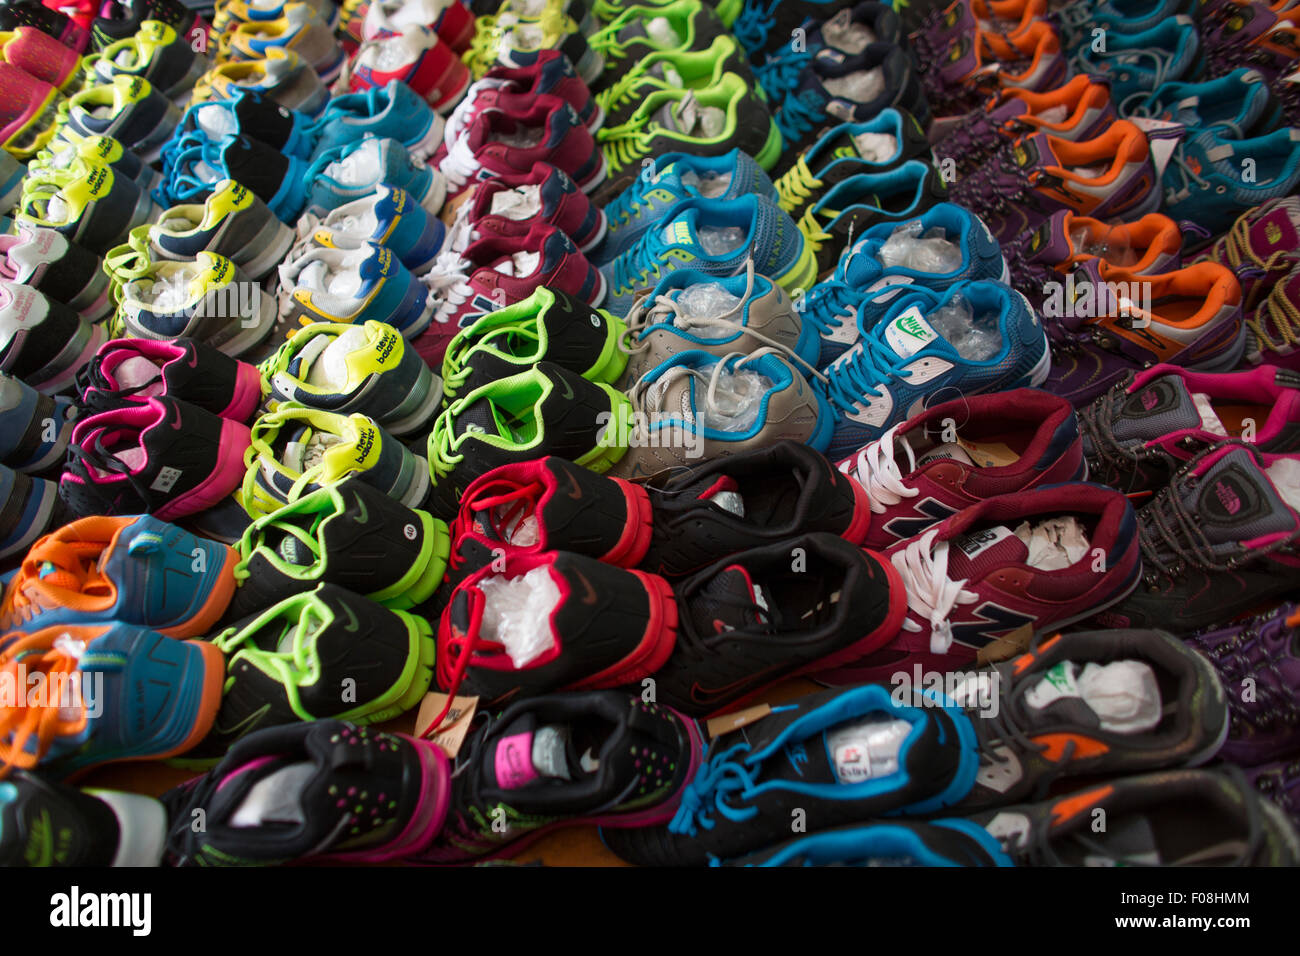 Shoe shop in Vietnam Stock Photo